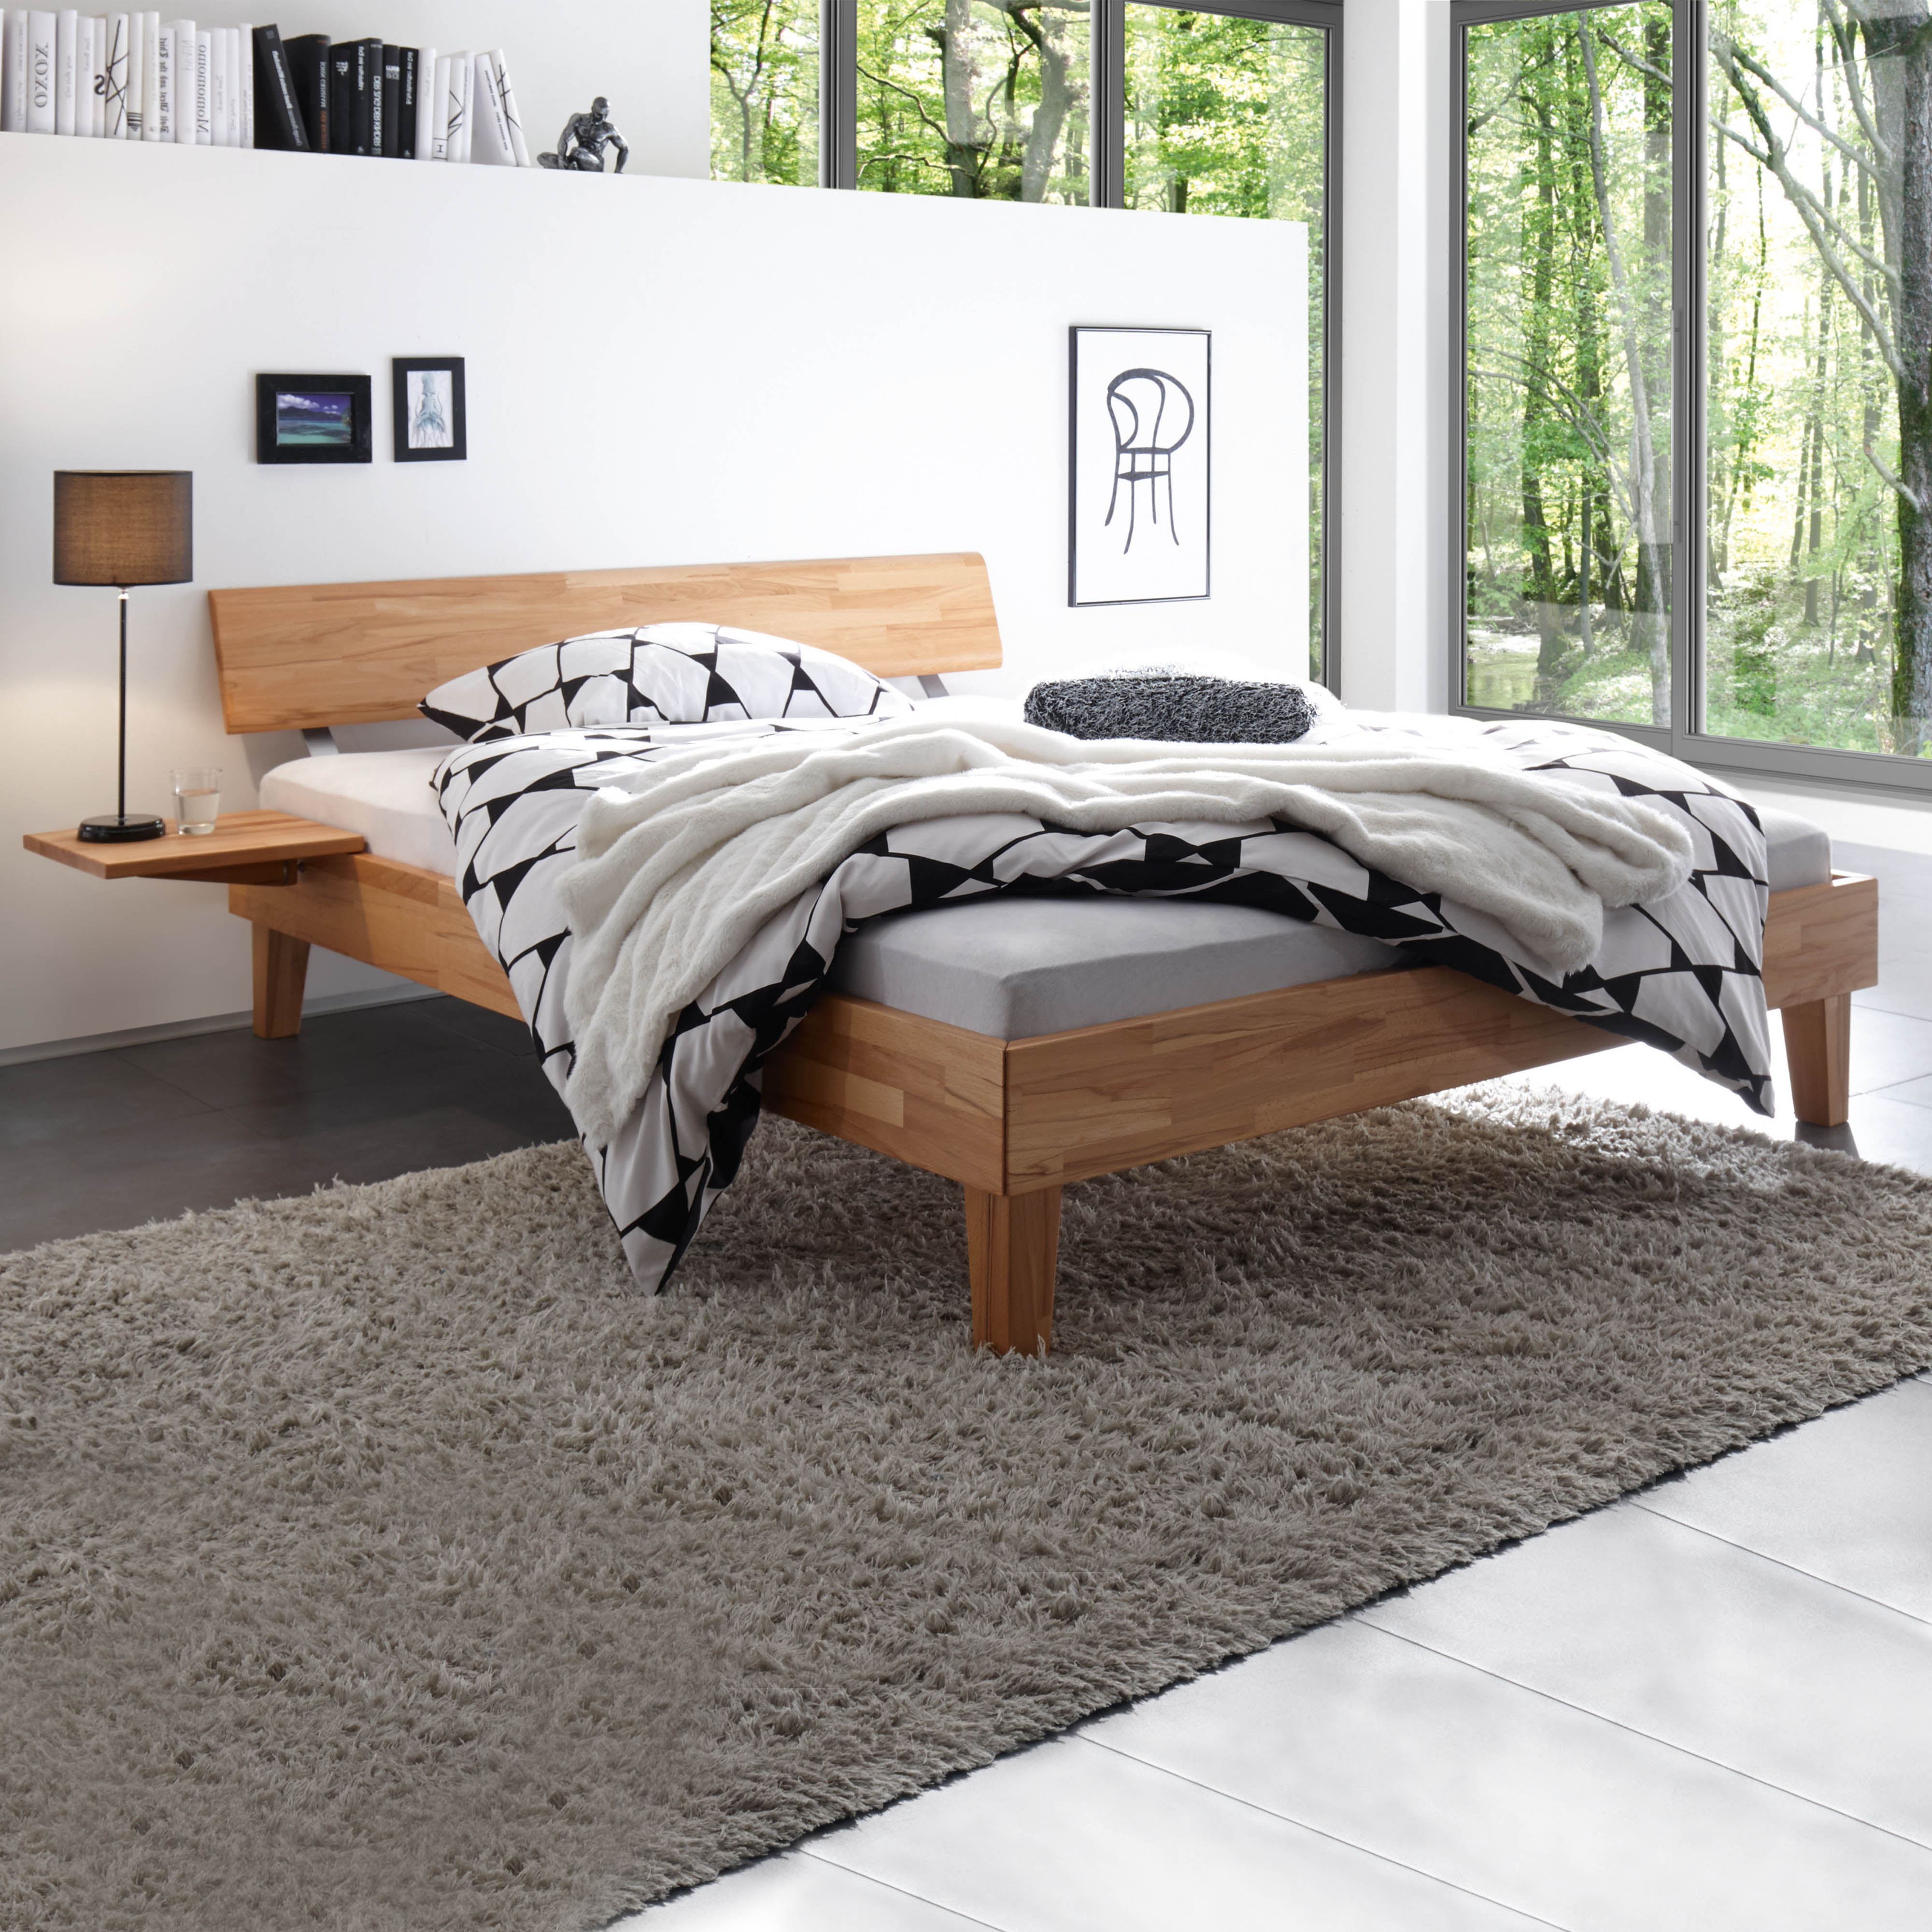 Hasena Mido – Nachttisch zur Montage am Bett, Kernbuche natur geölt, aus der Wood-Line Serie